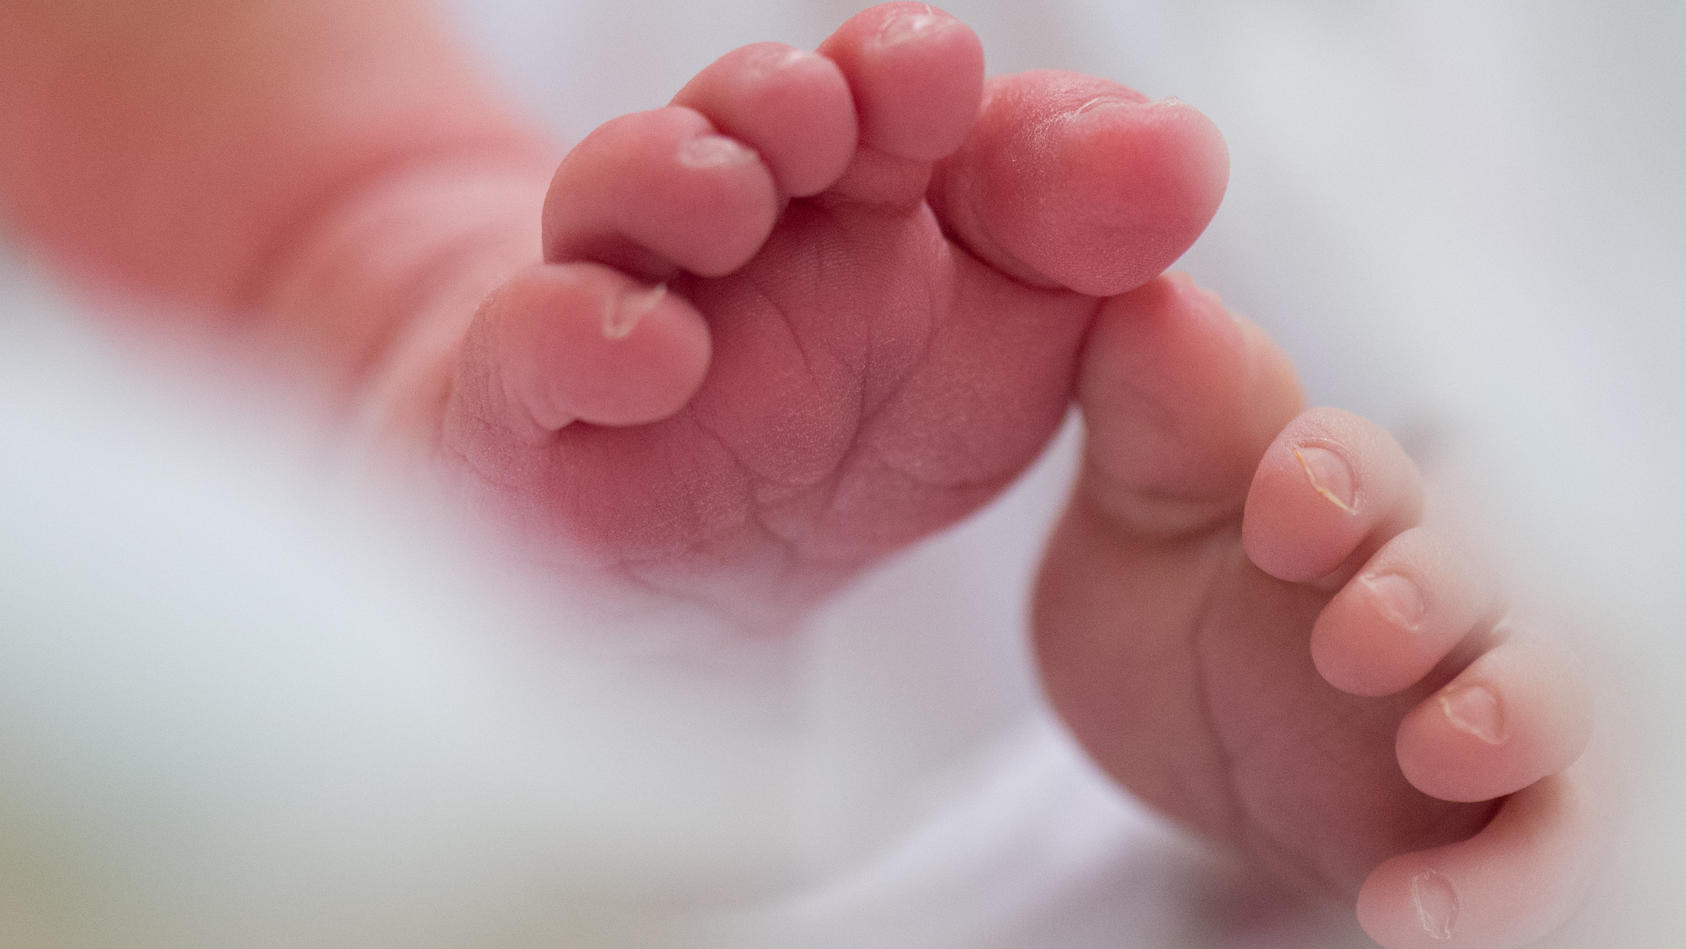 Füße eines Säuglings (Symbolfoto)